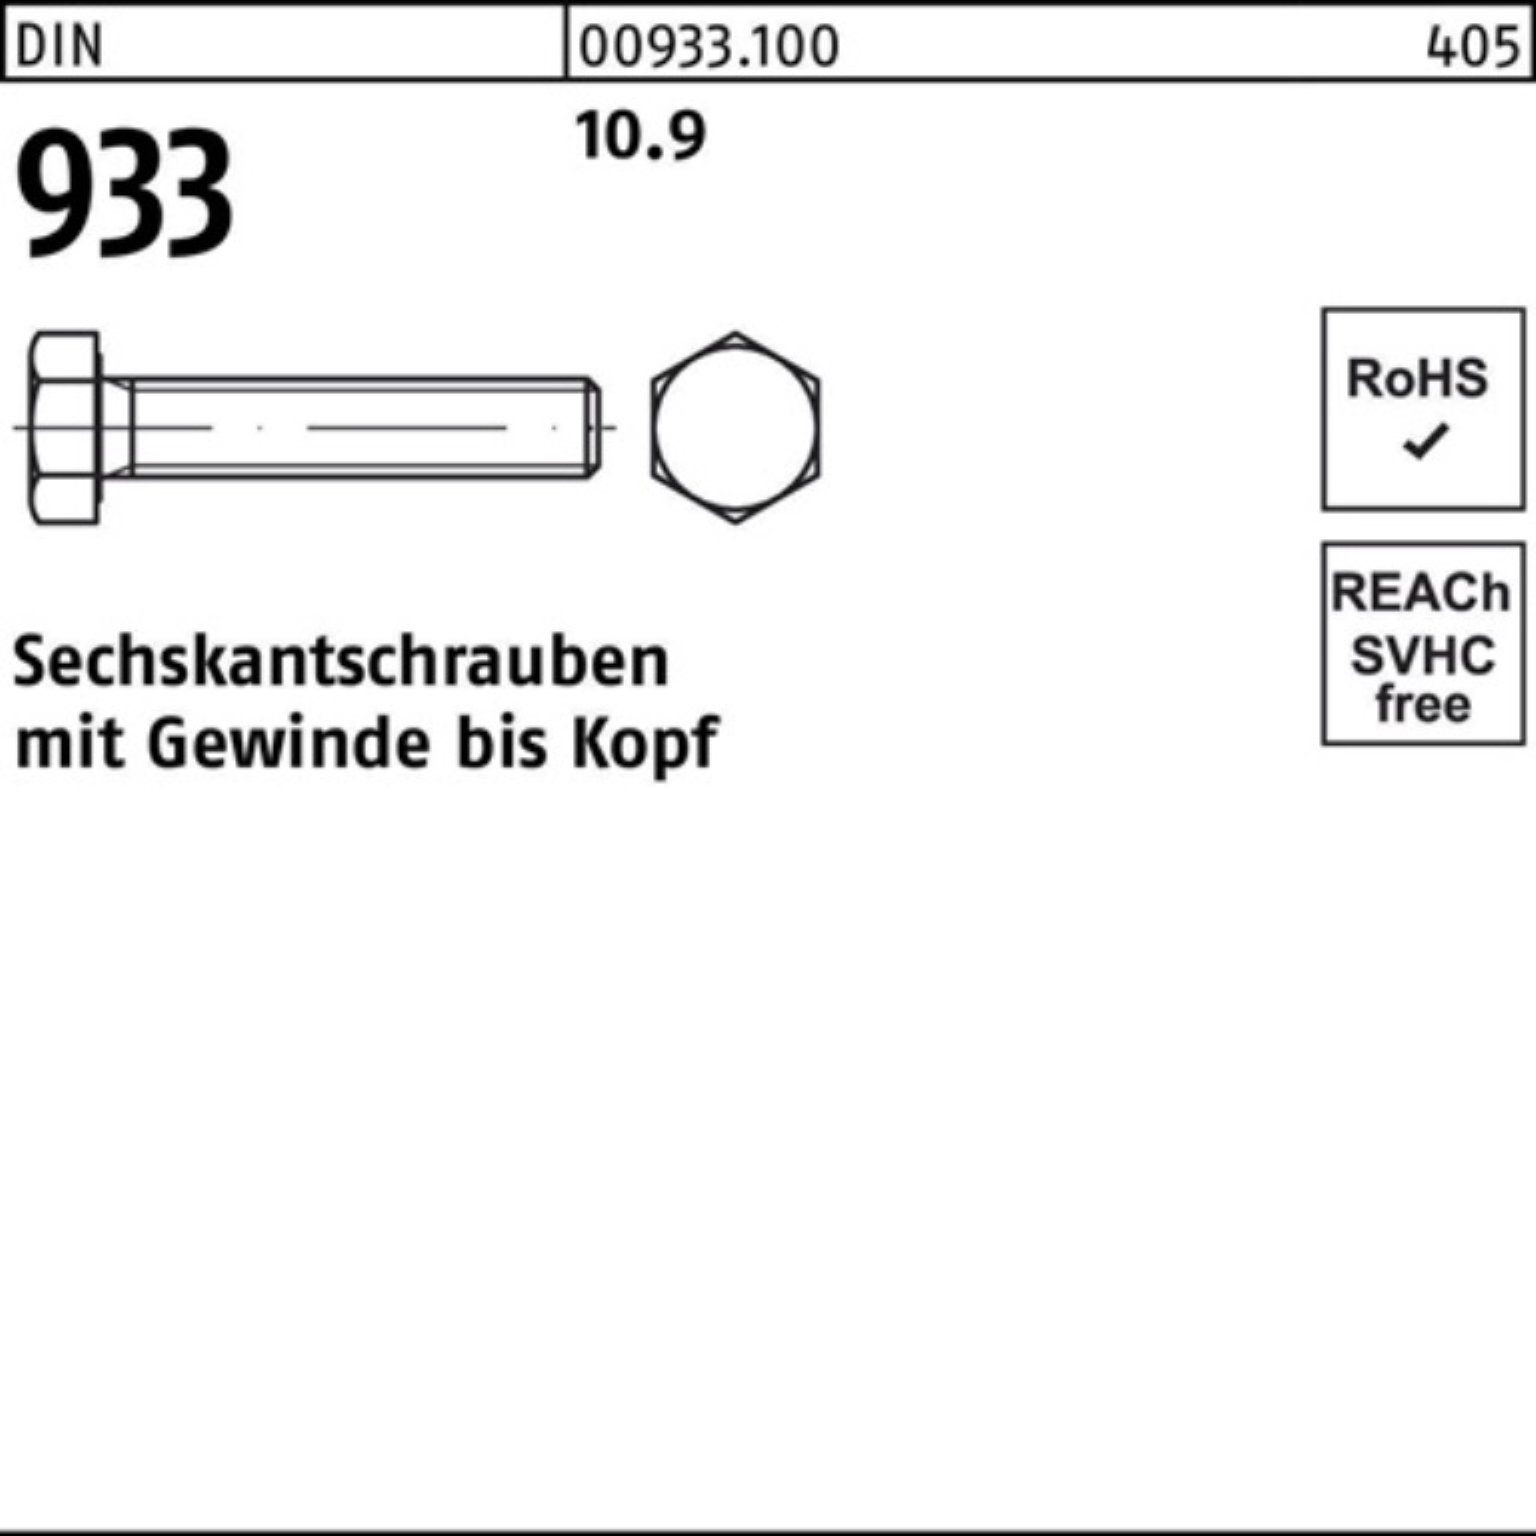 Reyher Sechskantschraube 100er 10.9 Stück 933 933 VG DIN 1 DIN M36x Sechskantschraube 90 Pack